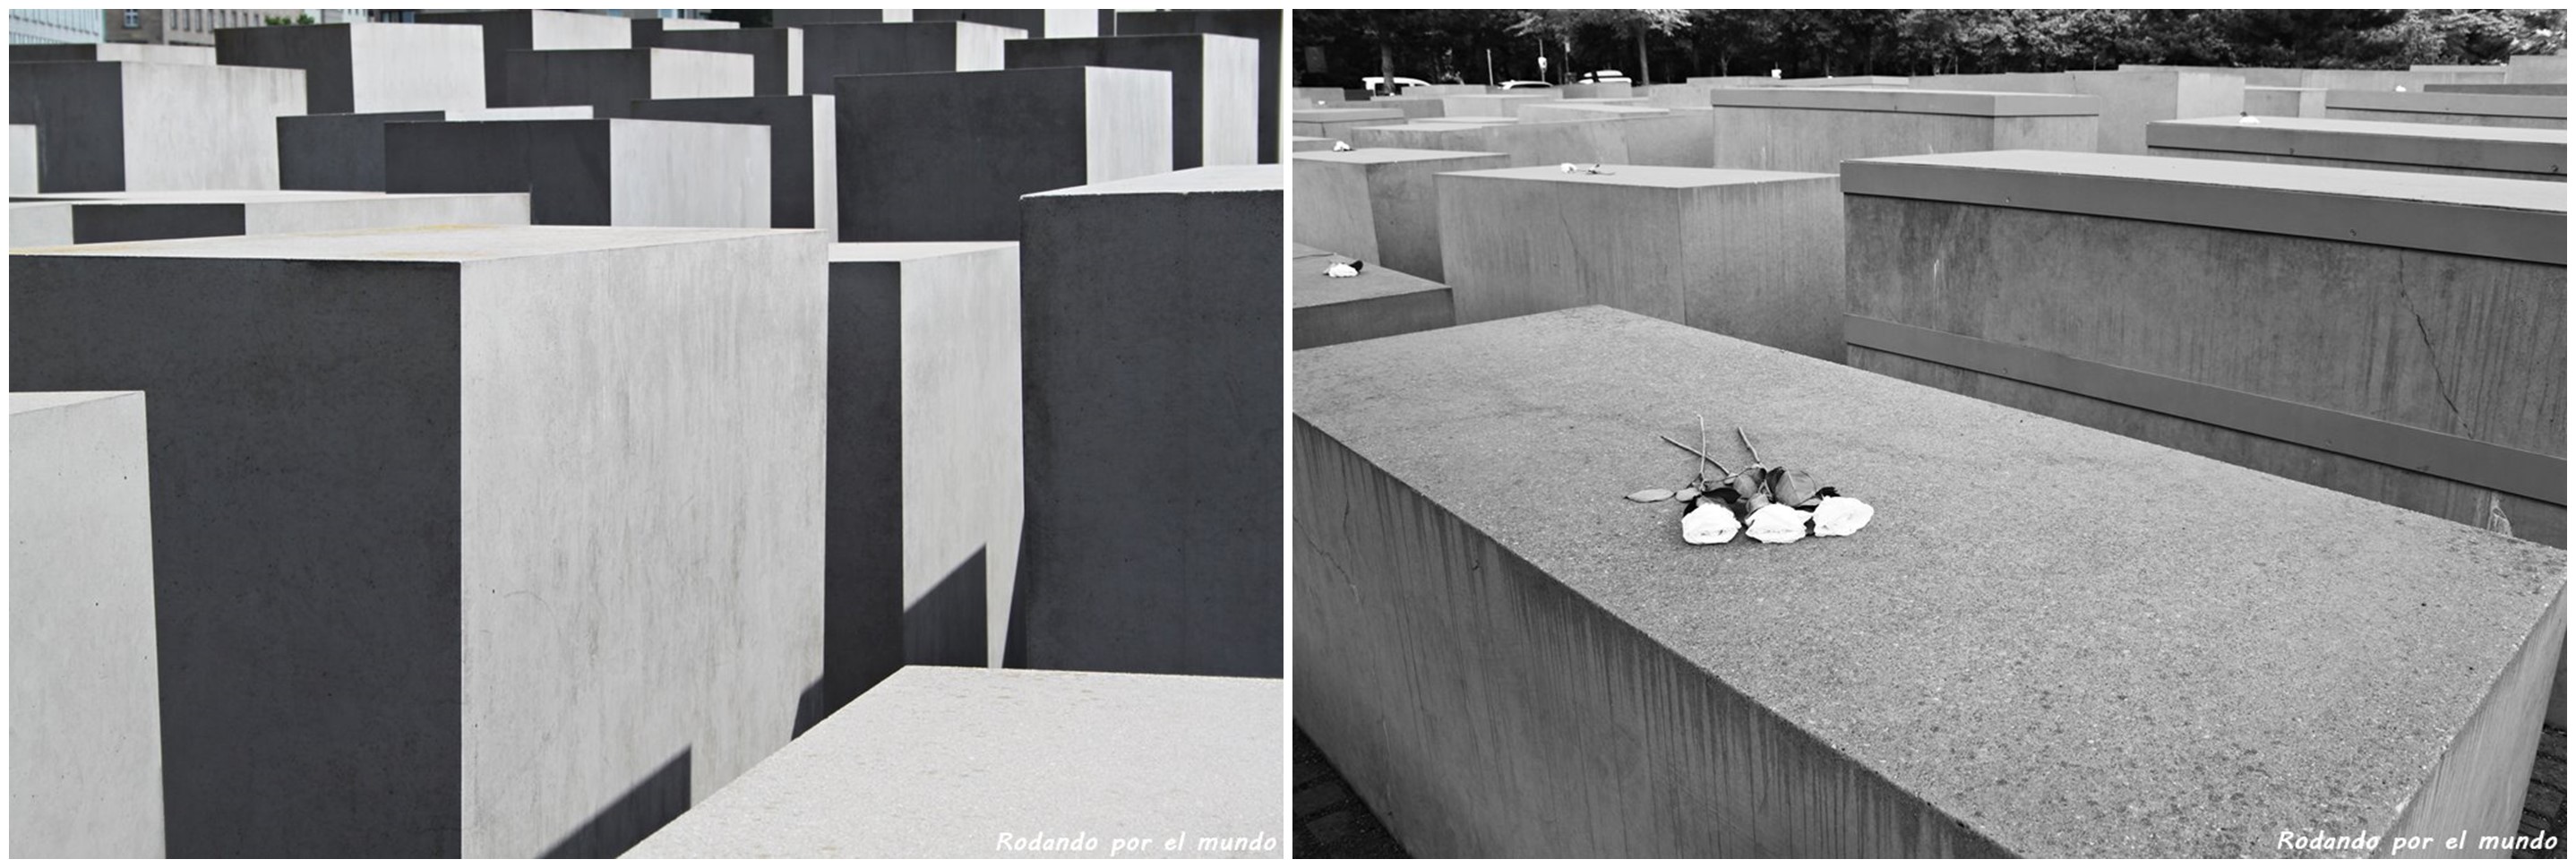 Monumento del Holocausto Berlin